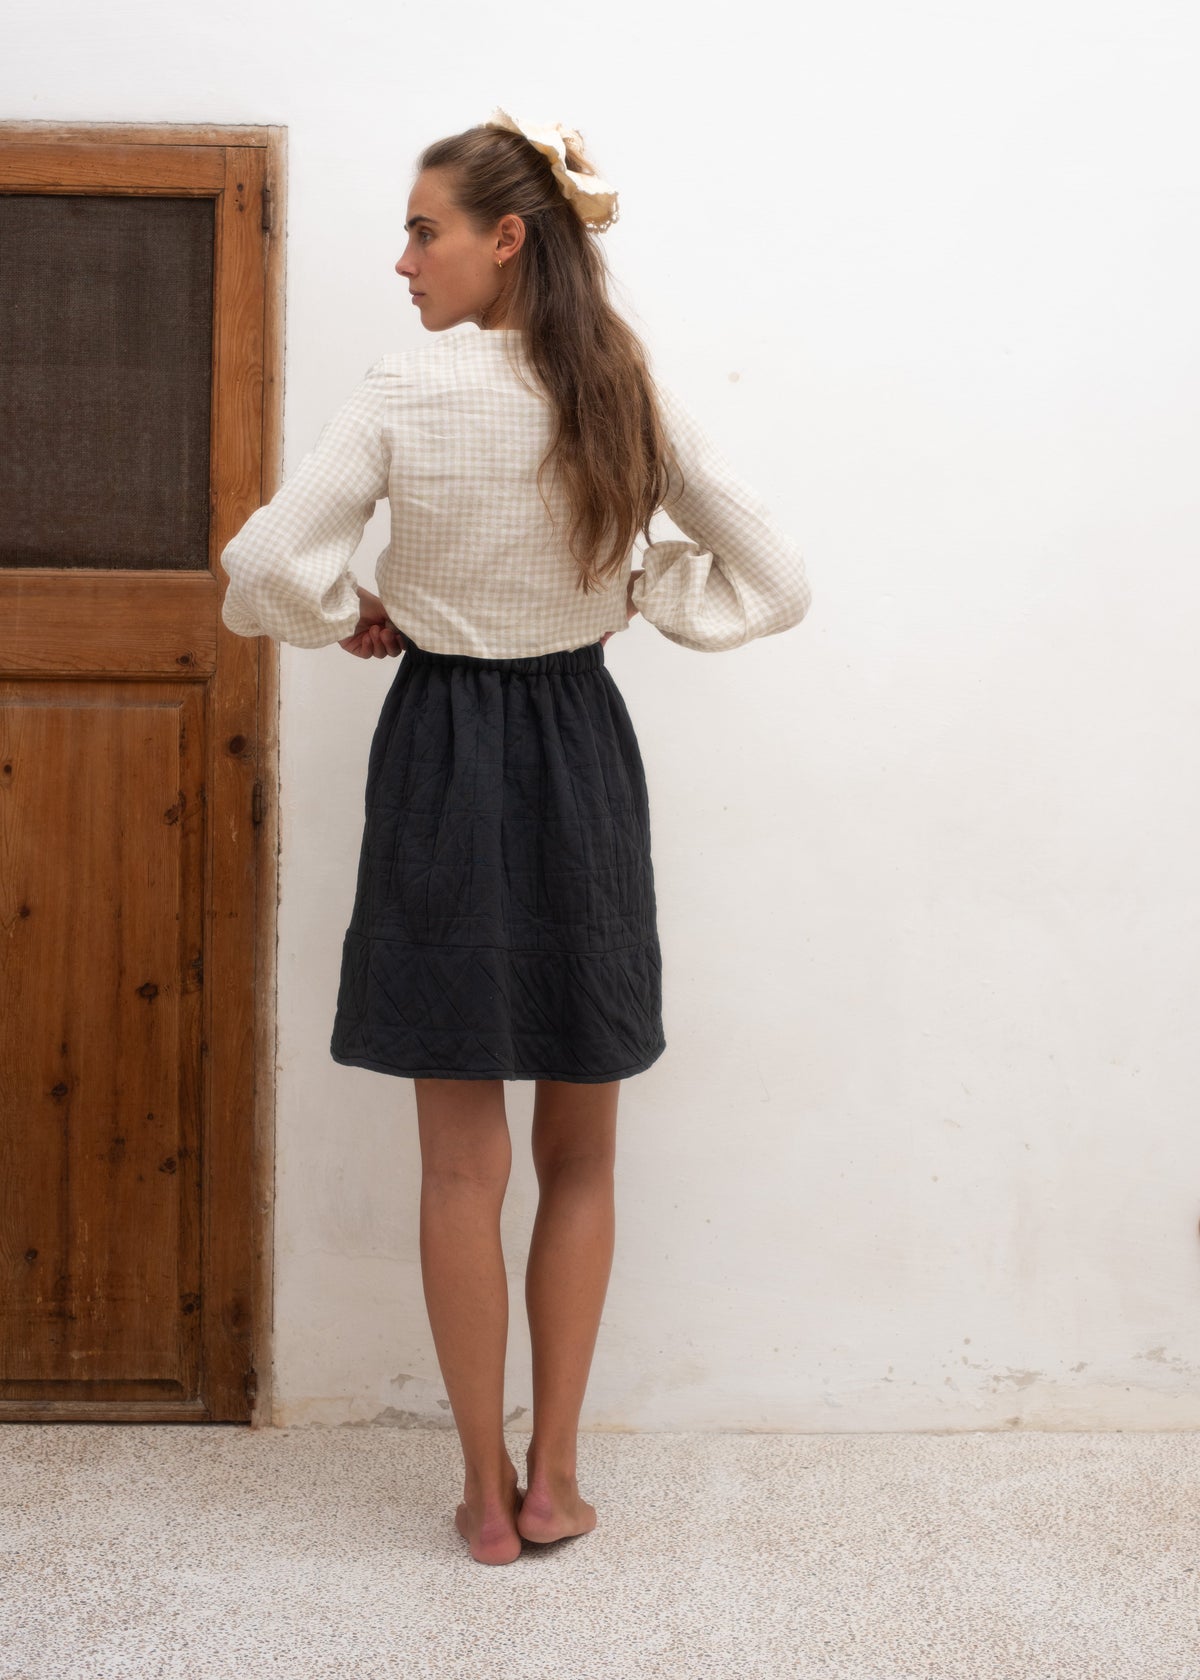 LA MAISON BUNDLE — Smog Renoir Skirt + Blouse Of Choice